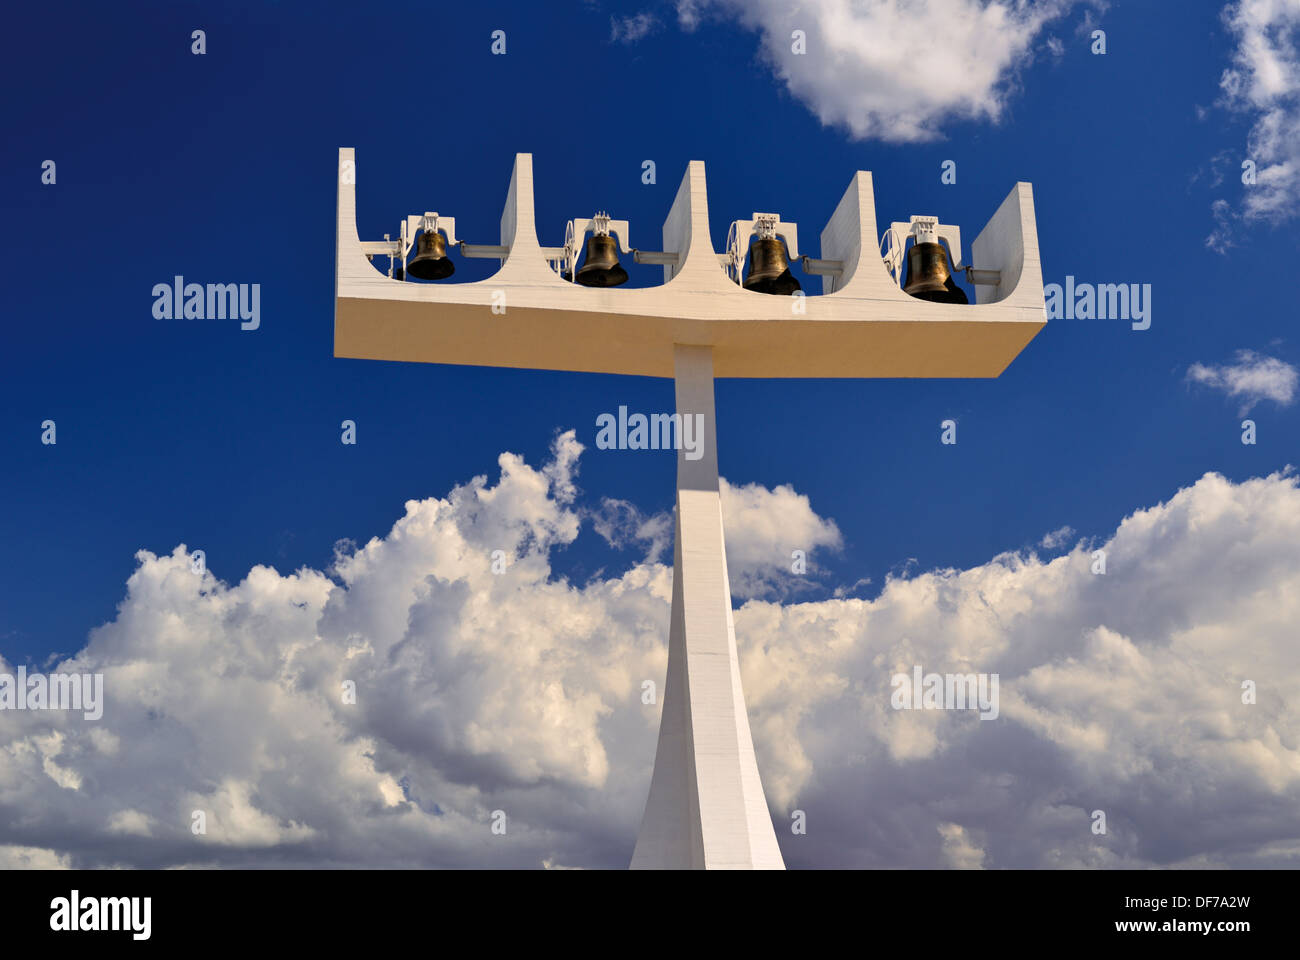 Brasilien, Brasilia: Glockenturm der Kathedrale Metropolitana Nossa Senhora da Aparecida Stockfoto